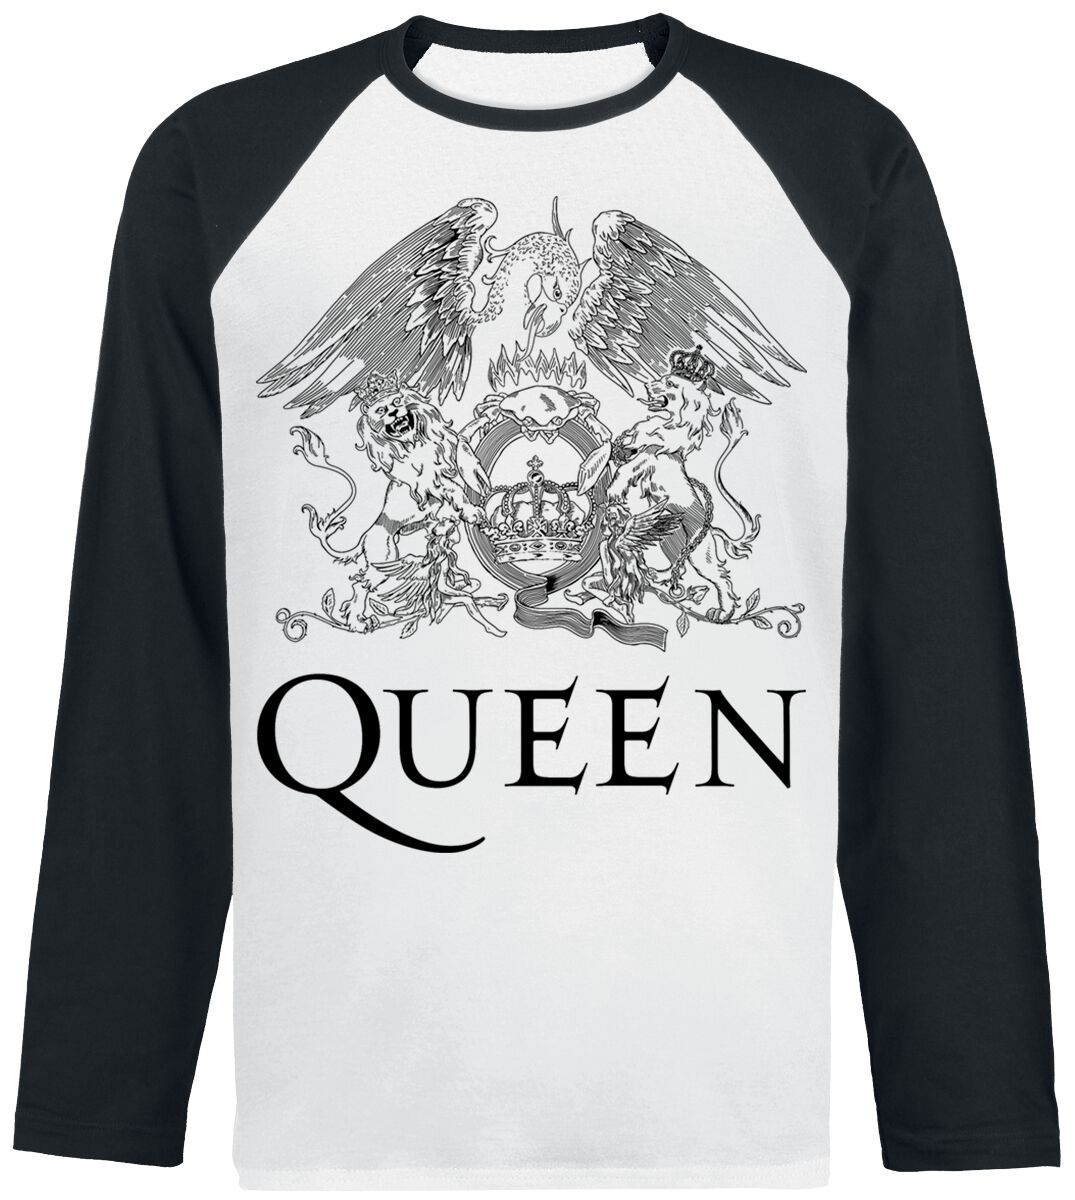 Queen Langarmshirt - Crest Vintage - S bis XXL - für Männer - Größe S - weiß/schwarz  - Lizenziertes Merchandise!